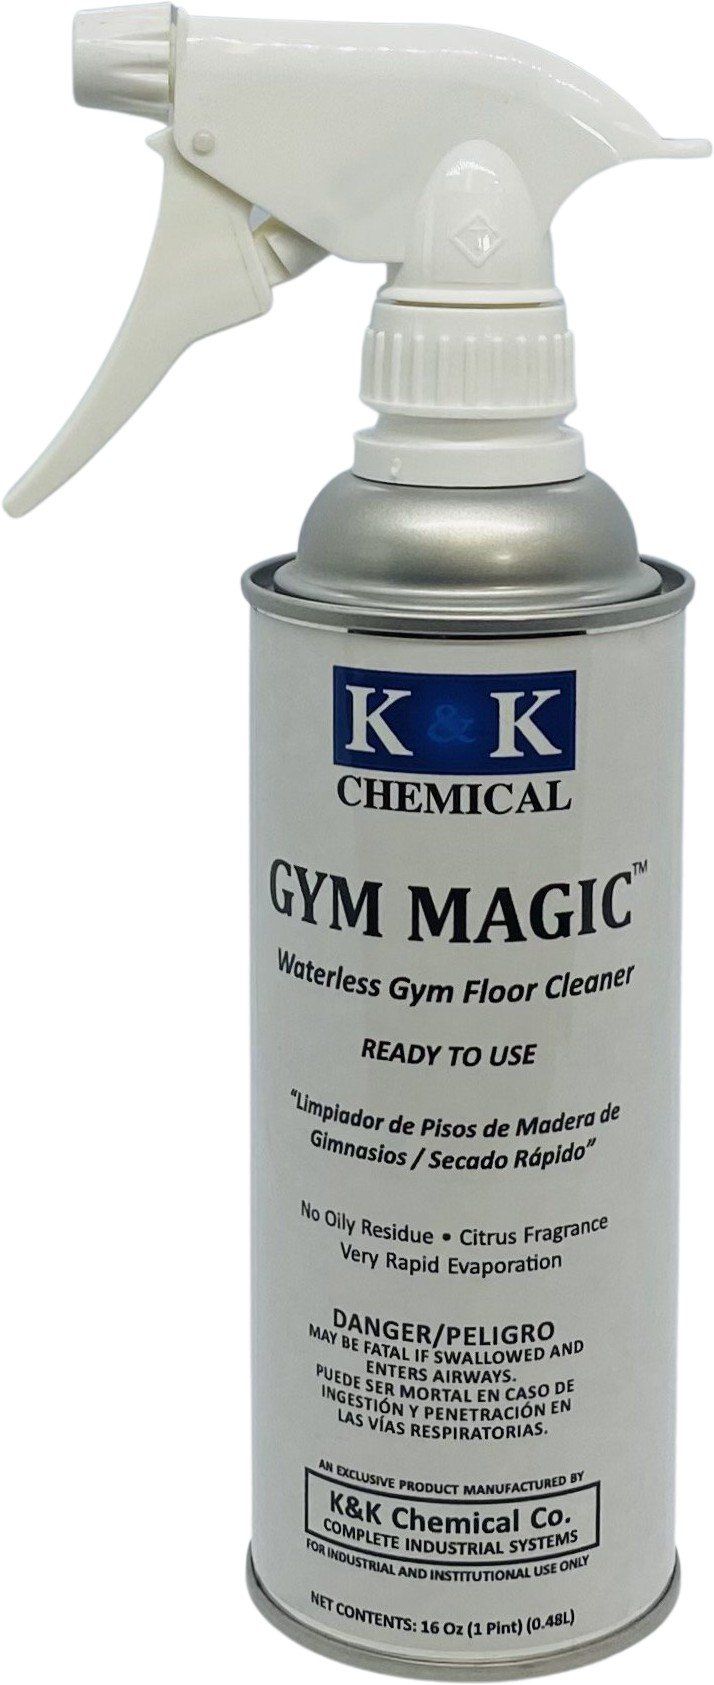 GYM MAGIC | RTU - Waterless Gym and Wood Floor Cleaner - Bundle Deal